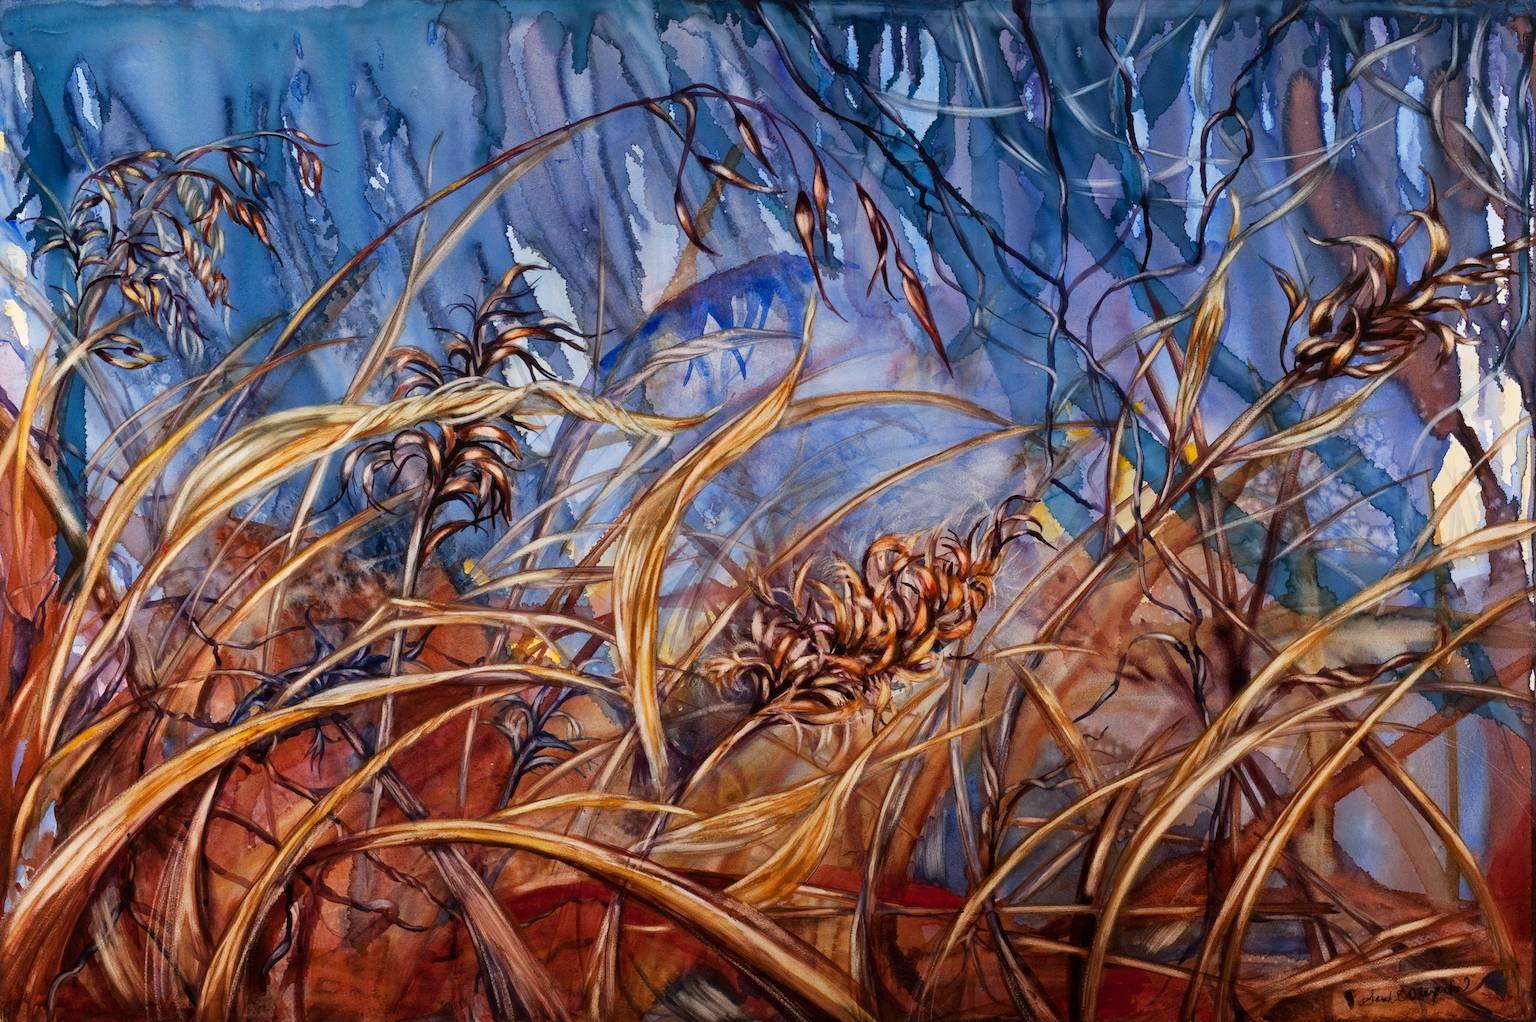 "Allow", landscape, marsh grasses, blue, warm tones, watercolor painting